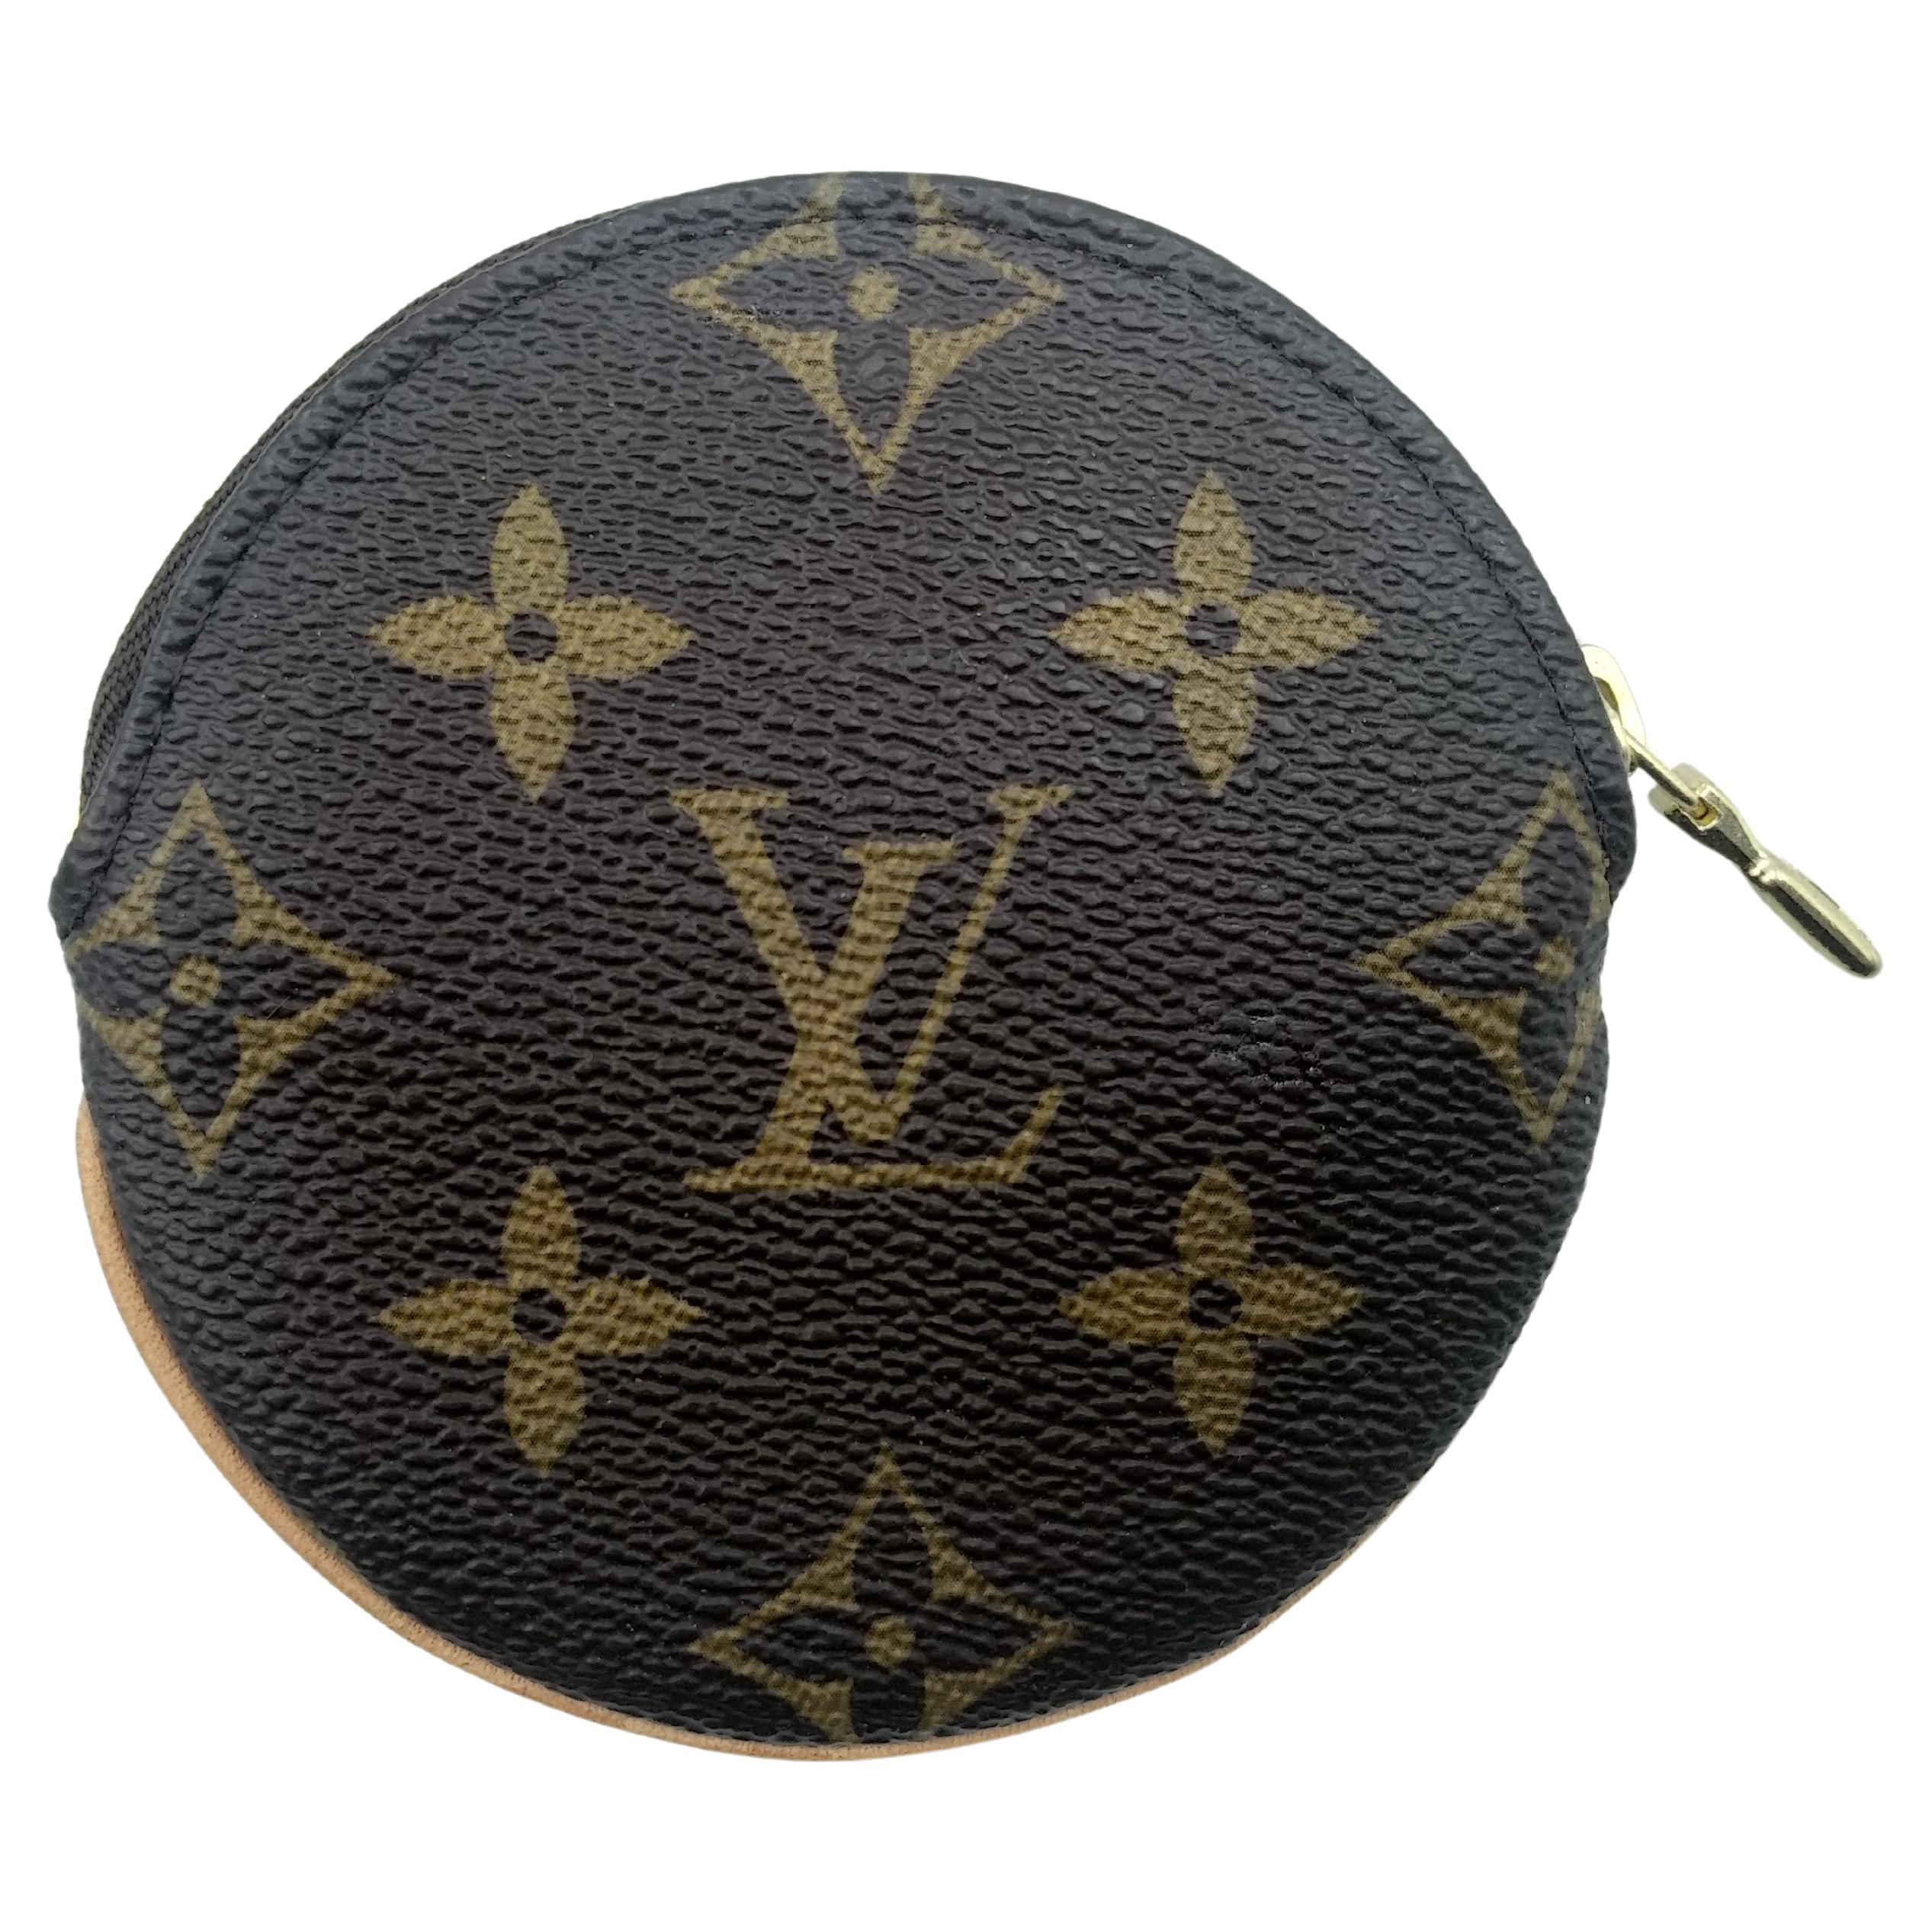 Sold at Auction: Louis Vuitton, Louis Vuitton LV Change Purse for